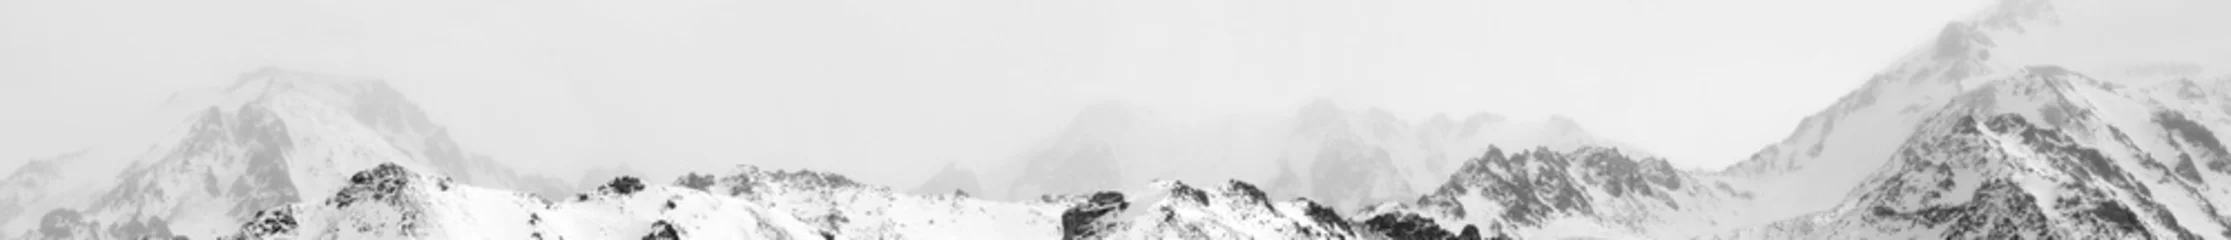 Gordijnen Snowy winter in rocky mountain © petunyia